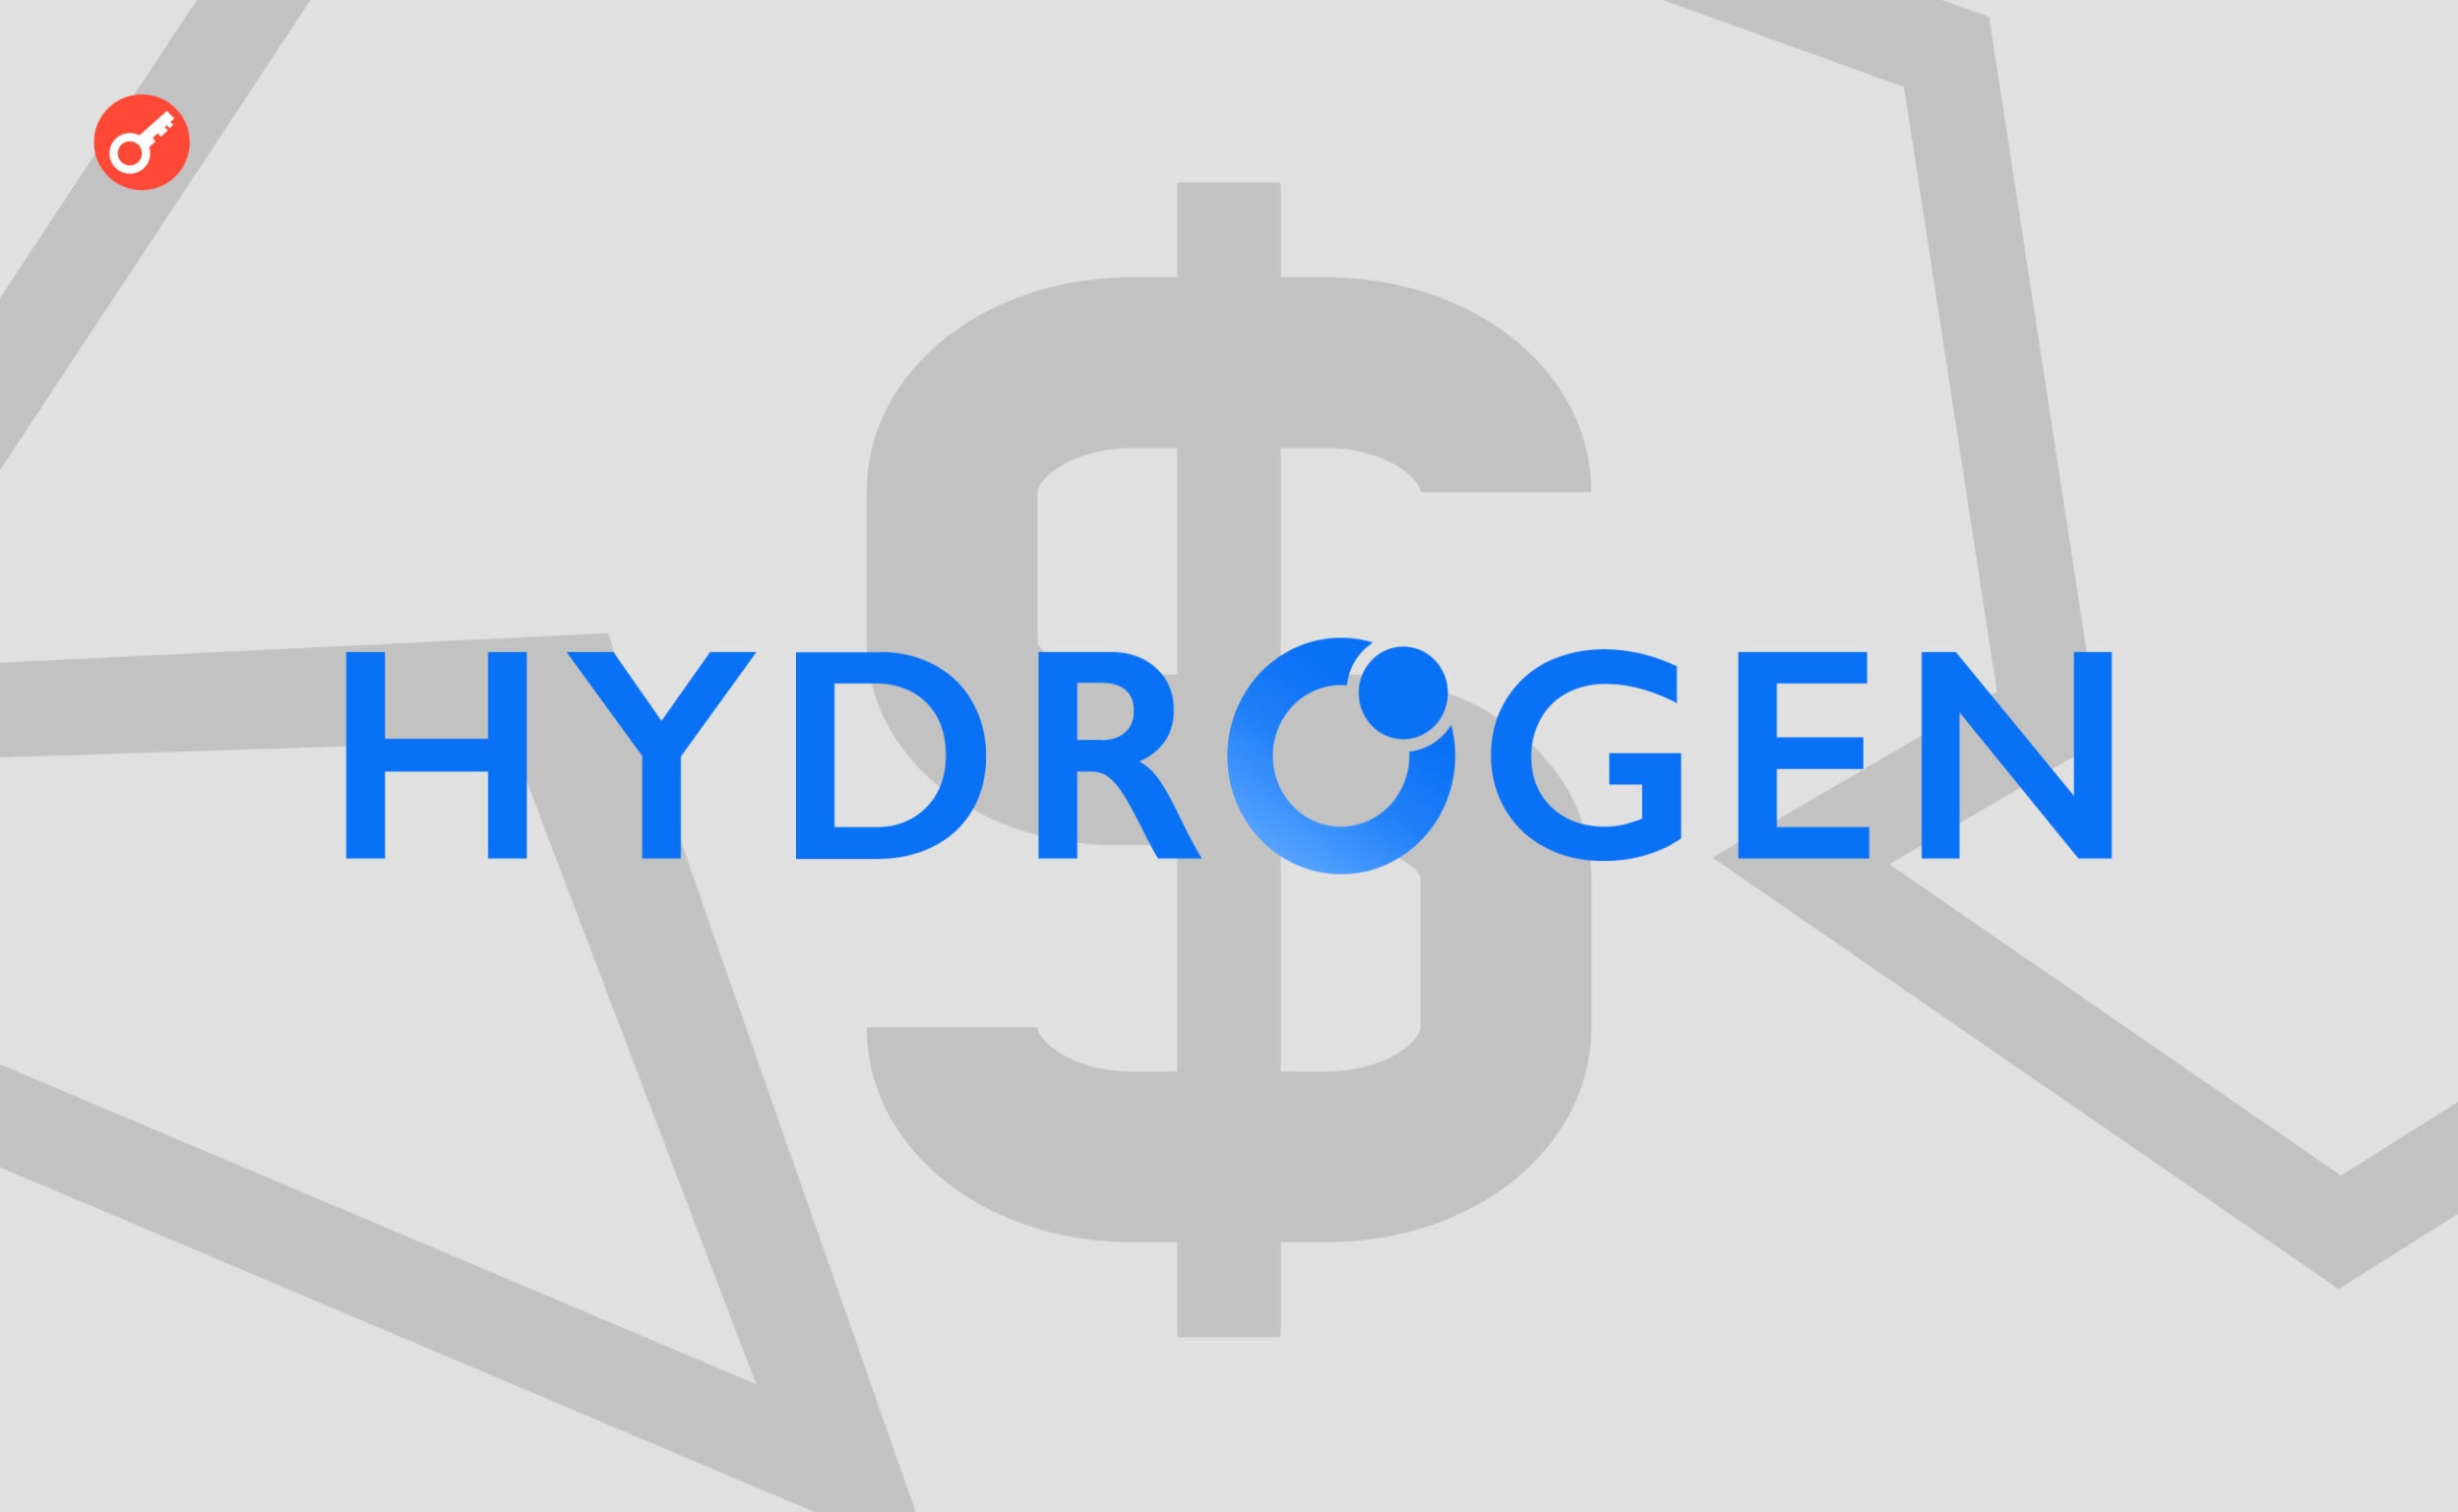 USA nakazuje projektowi kryptowalutowemu Hydrogen zapłacić 2,5 mln USD. Główny kolaż wiadomości.